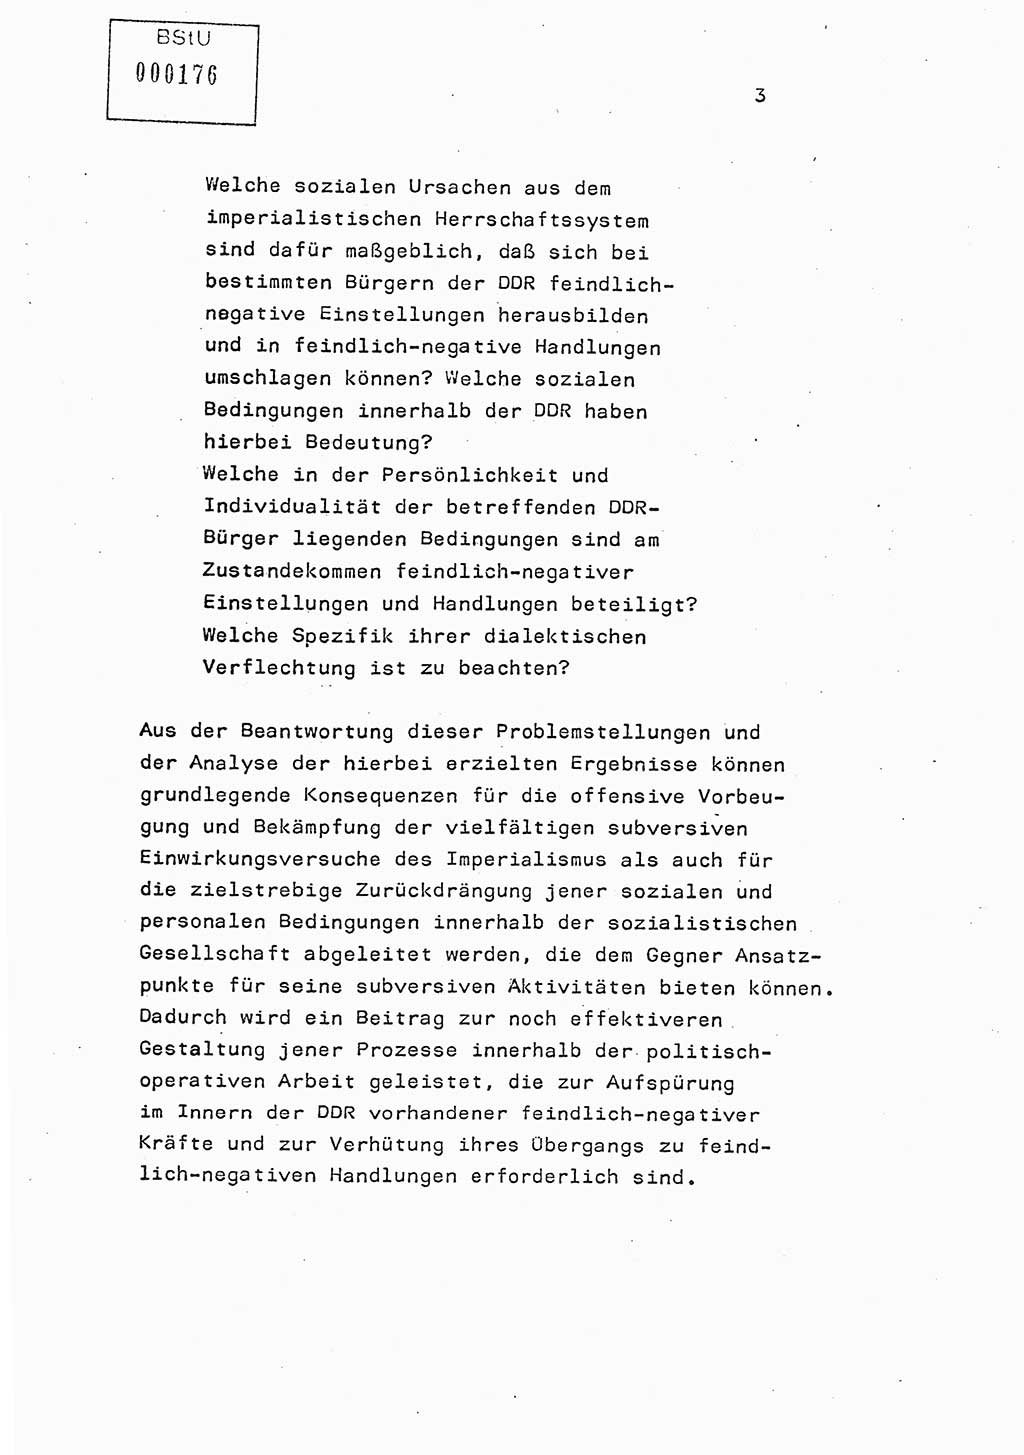 Studienmaterial Ministerium für Staatssicherheit (MfS) [Deutsche Demokratische Republik (DDR)], Hauptabteilung (HA) Ⅸ/ Auswertungs- und Kontrollgruppe (AKG), Berlin ca. 1986, Seite 3 (Stud.-Mat. MfS DDR HA Ⅸ/AKG 1986, S. 3)